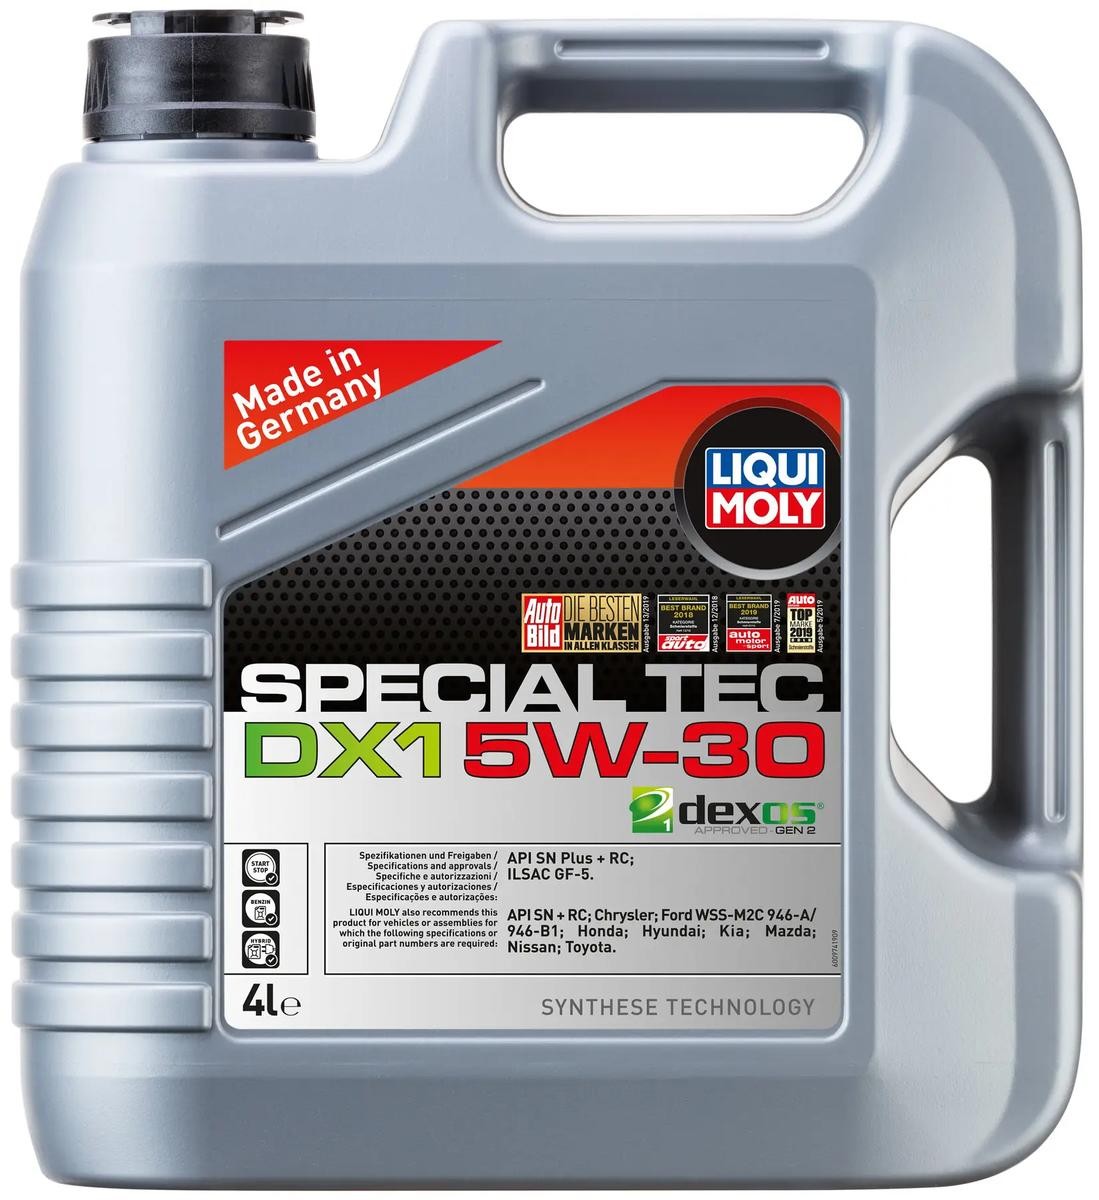 LIQUI MOLY Special Tec, DX1 5W-30, 4l Motor oil 20968 buy